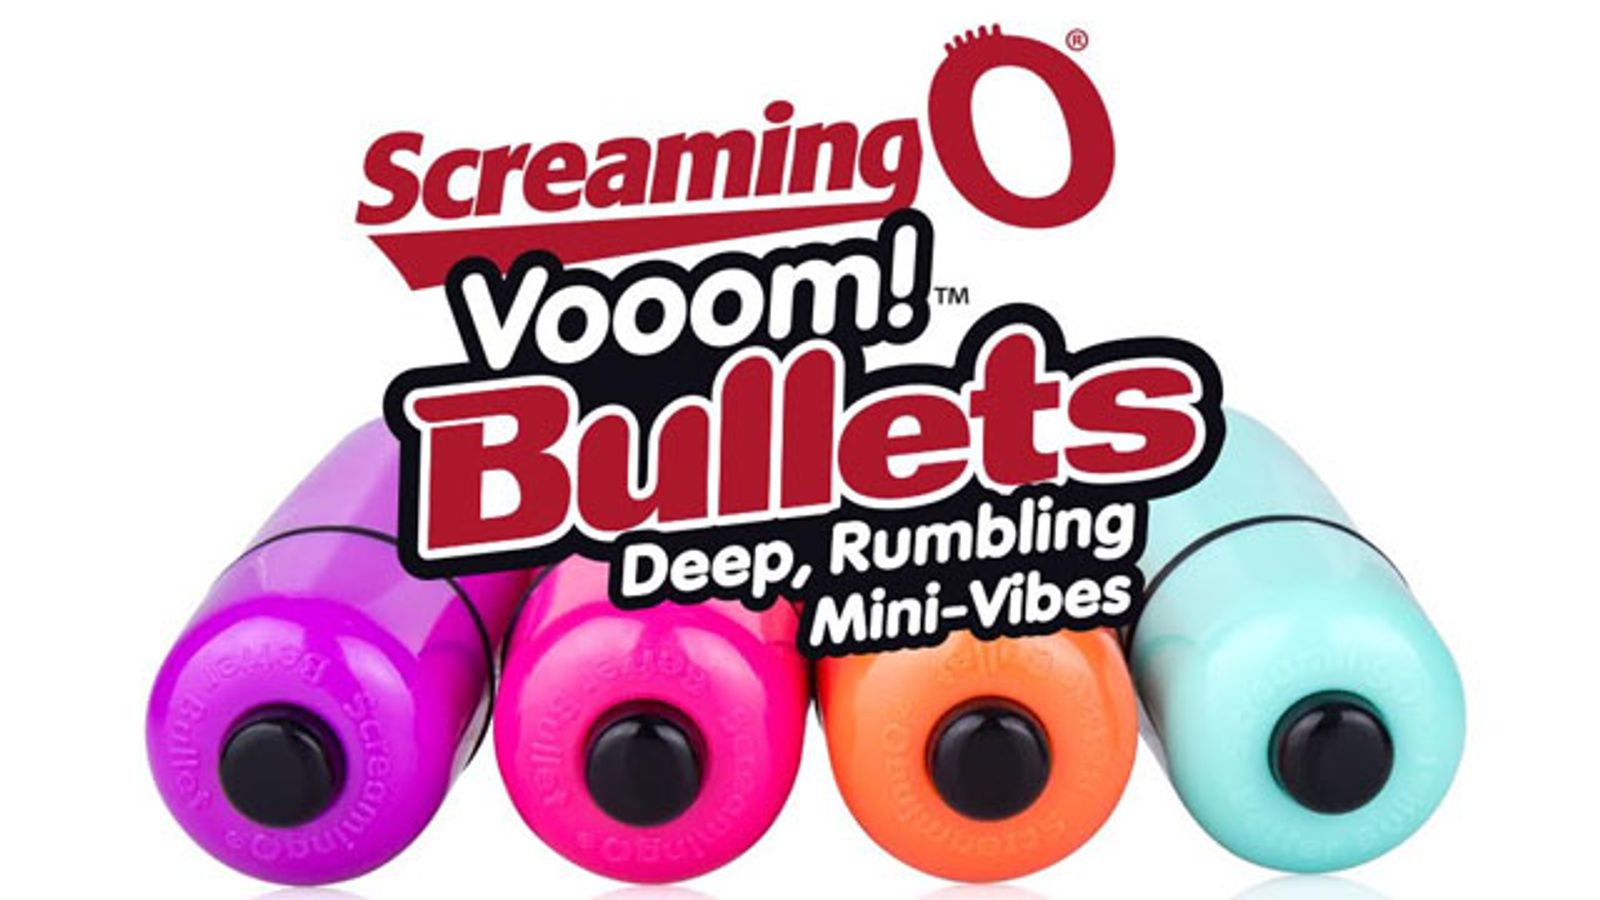 The Screaming O’s Vooom Bullets Newest Bestsellers, Reach Sales Milestone